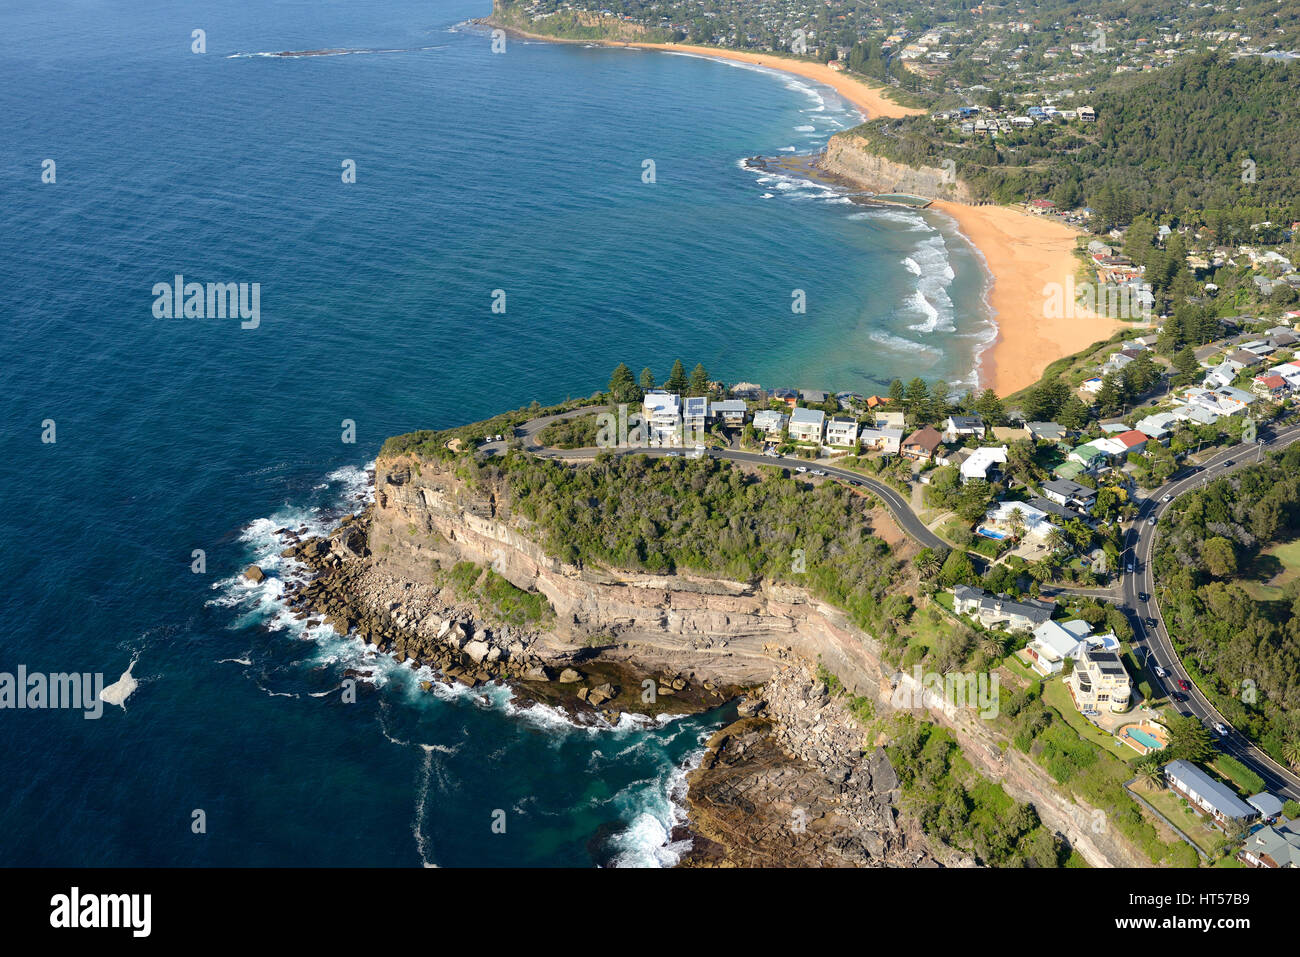 LUFTAUFNAHME. Malerische Strandgemeinde nördlich von Sydneys Zentrum. Bilgola Beach, Sydney, New South Wales, Australien. Stockfoto